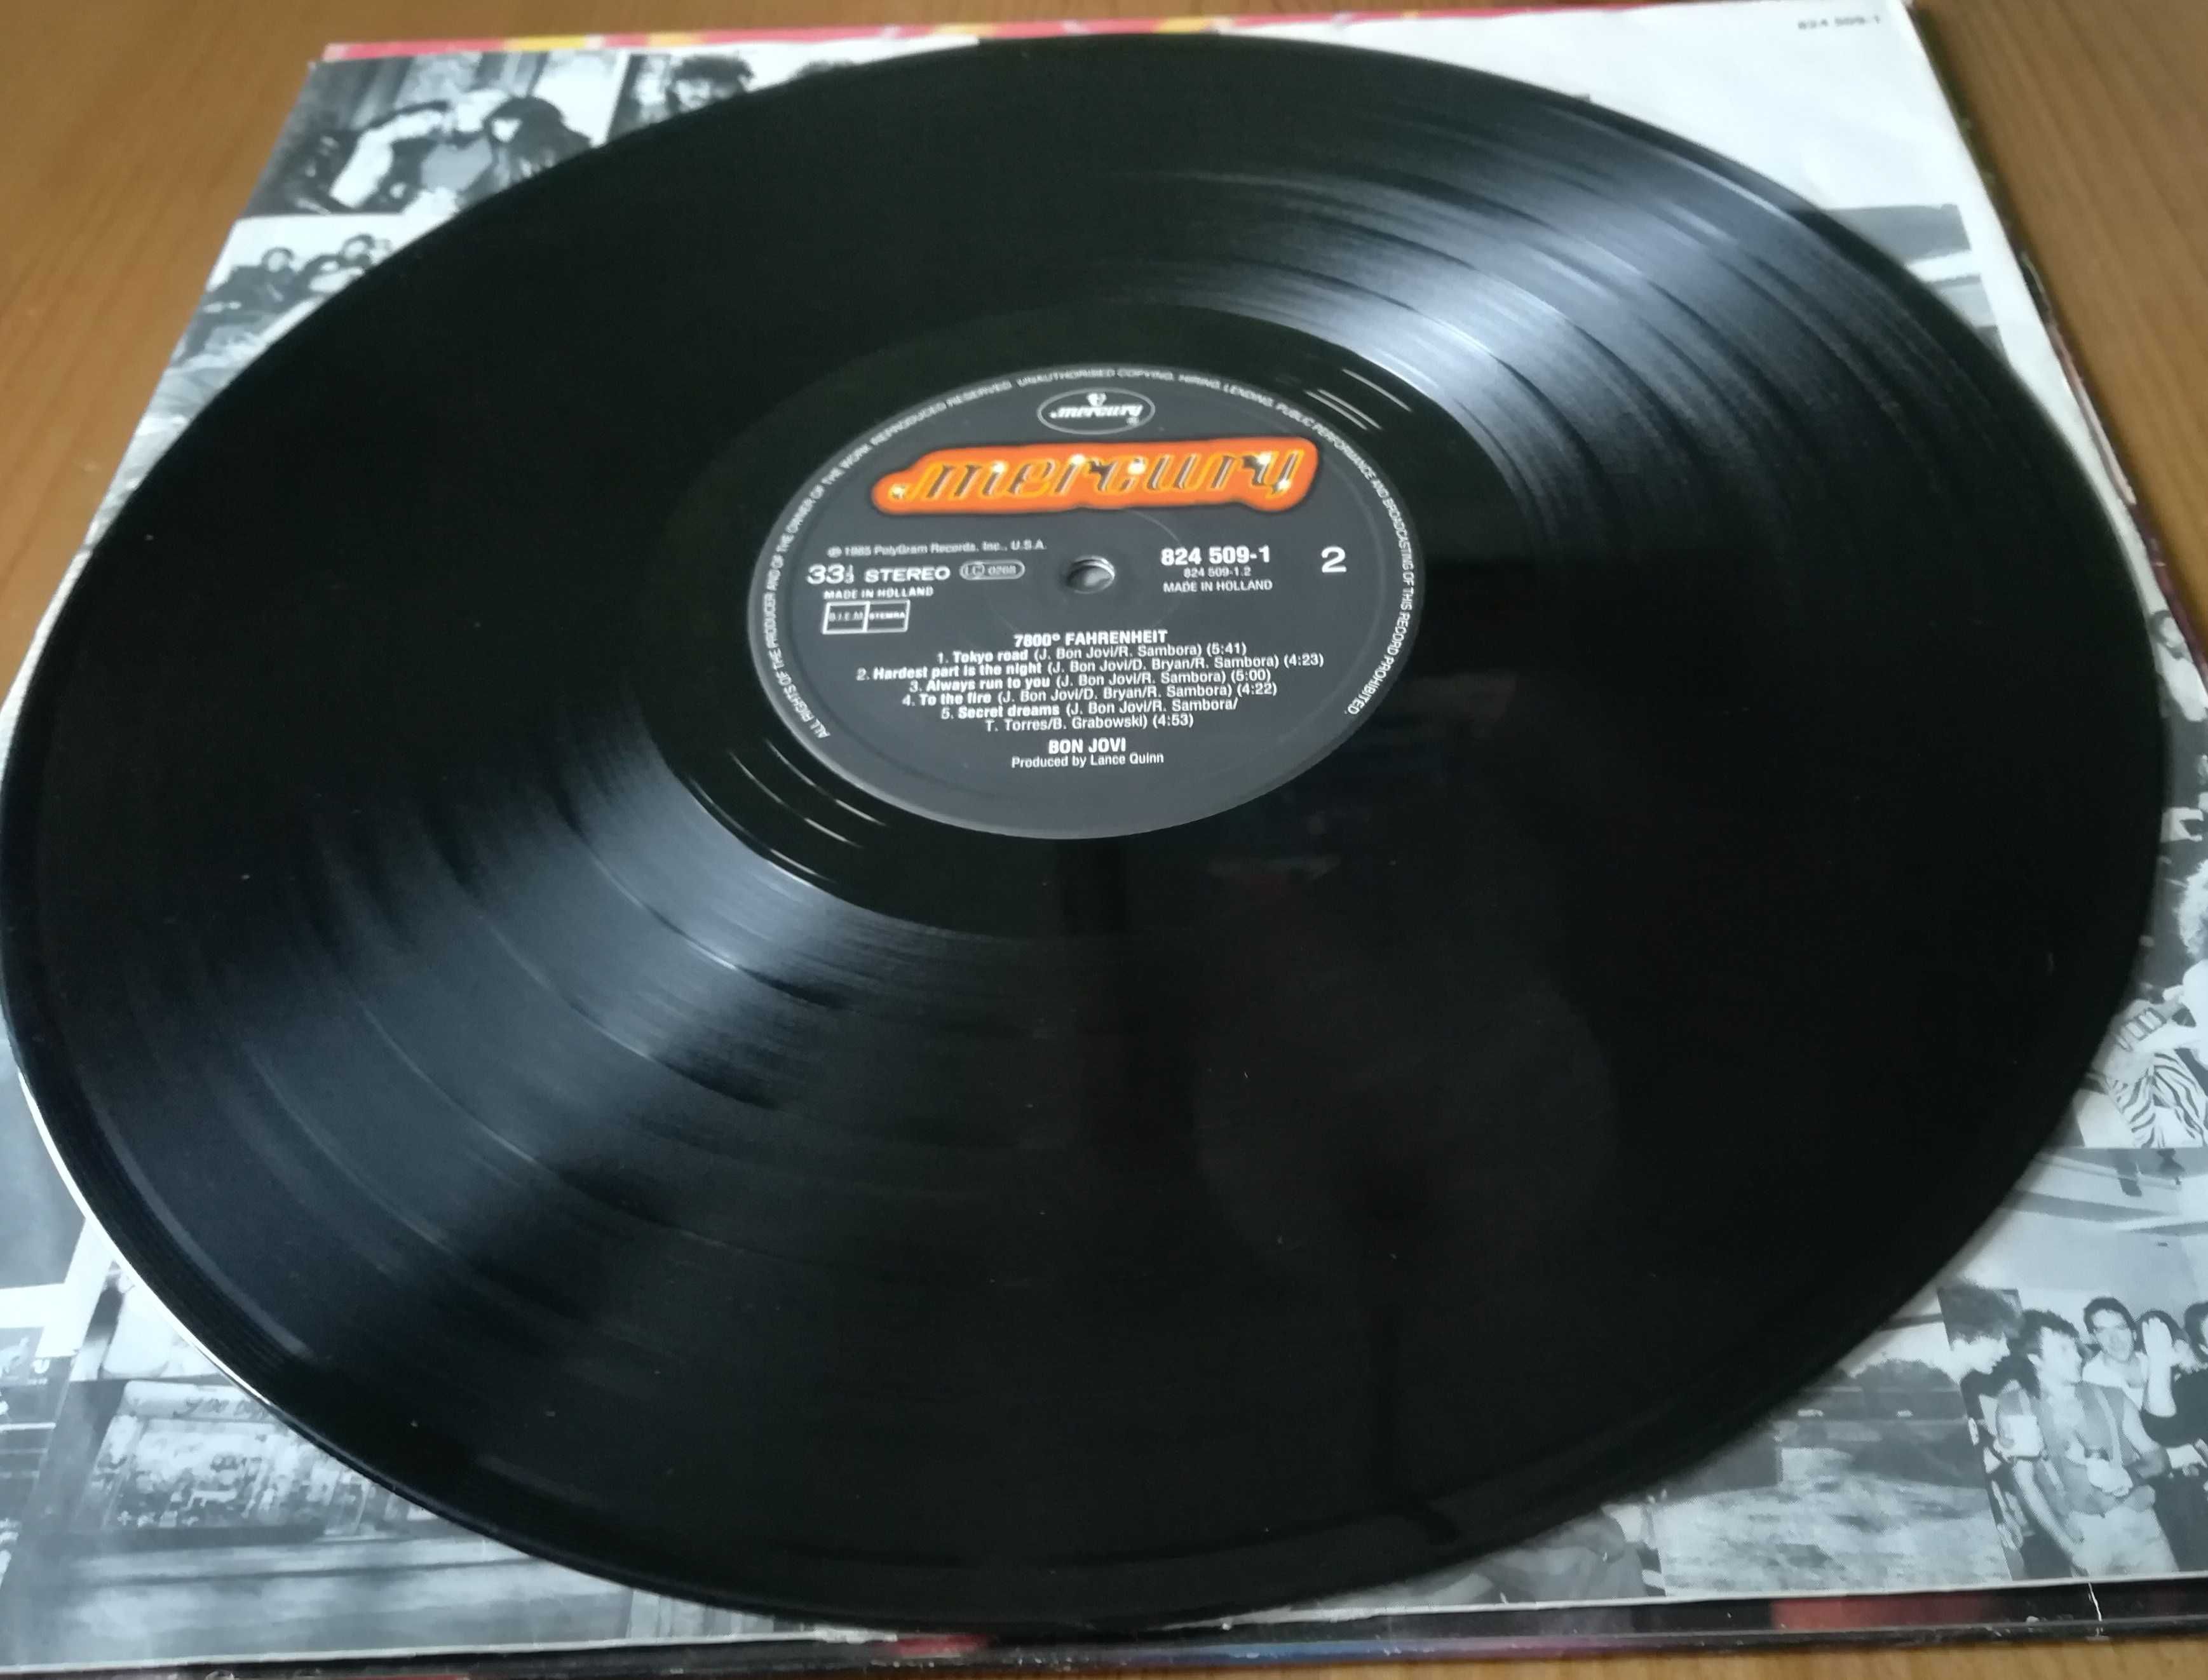 Bon Jovi - 7800 Fahrenheit - płyta winylowa